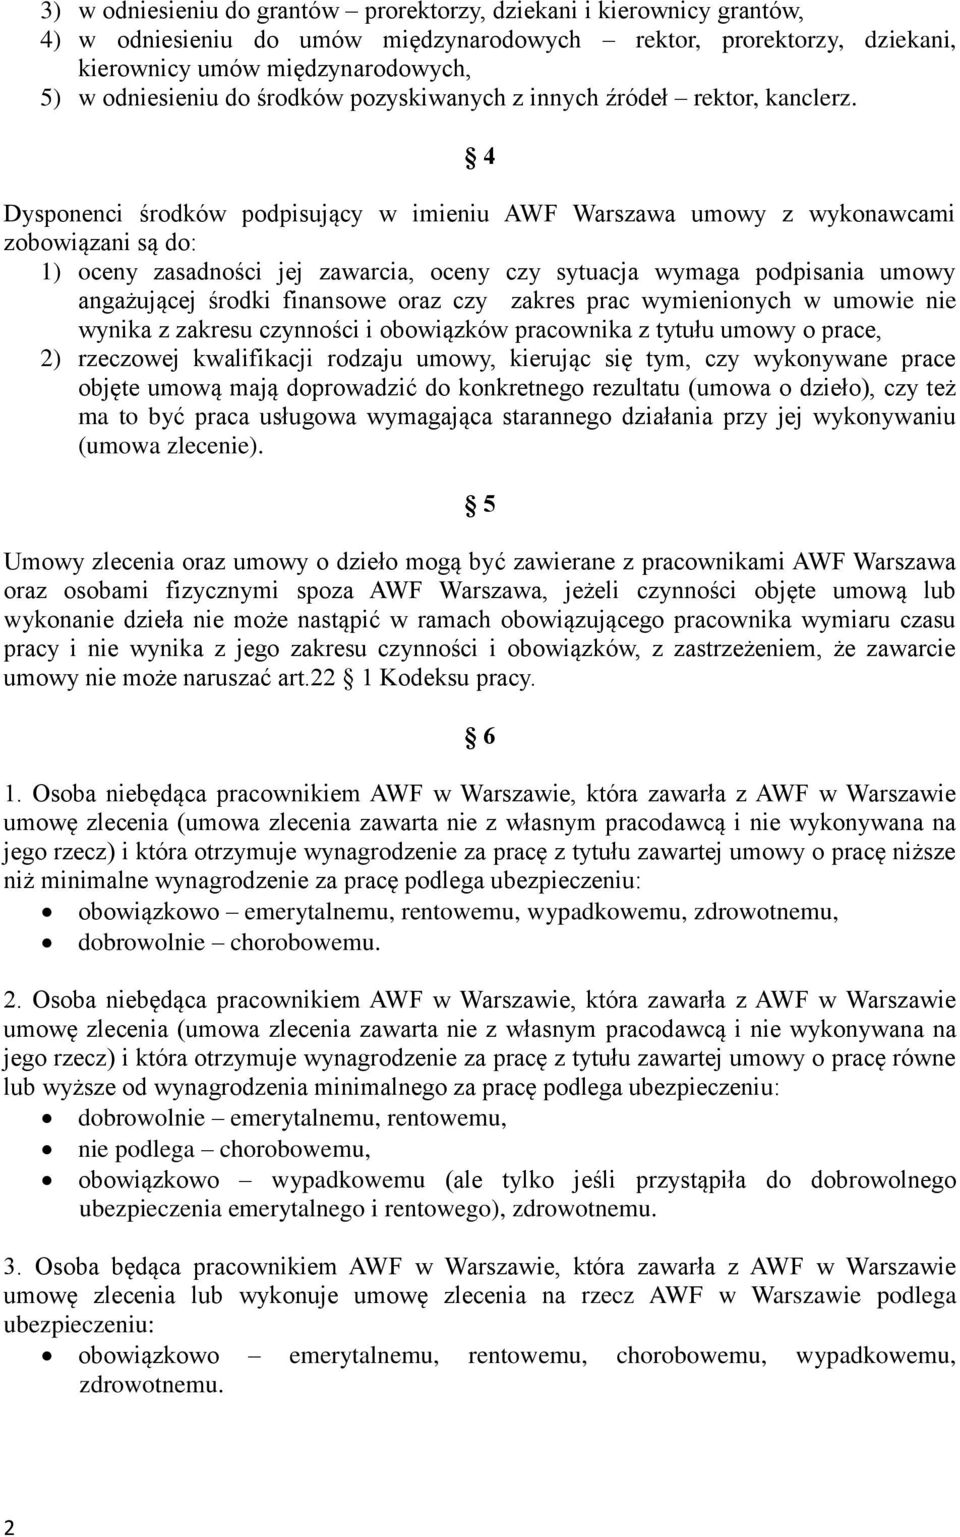 Zasady i tryb zawierania i rozliczania umów zlecenia i umów o dzieło w  Akademii Wychowania Fizycznego Józefa Piłsudskiego w Warszawie - PDF  Darmowe pobieranie